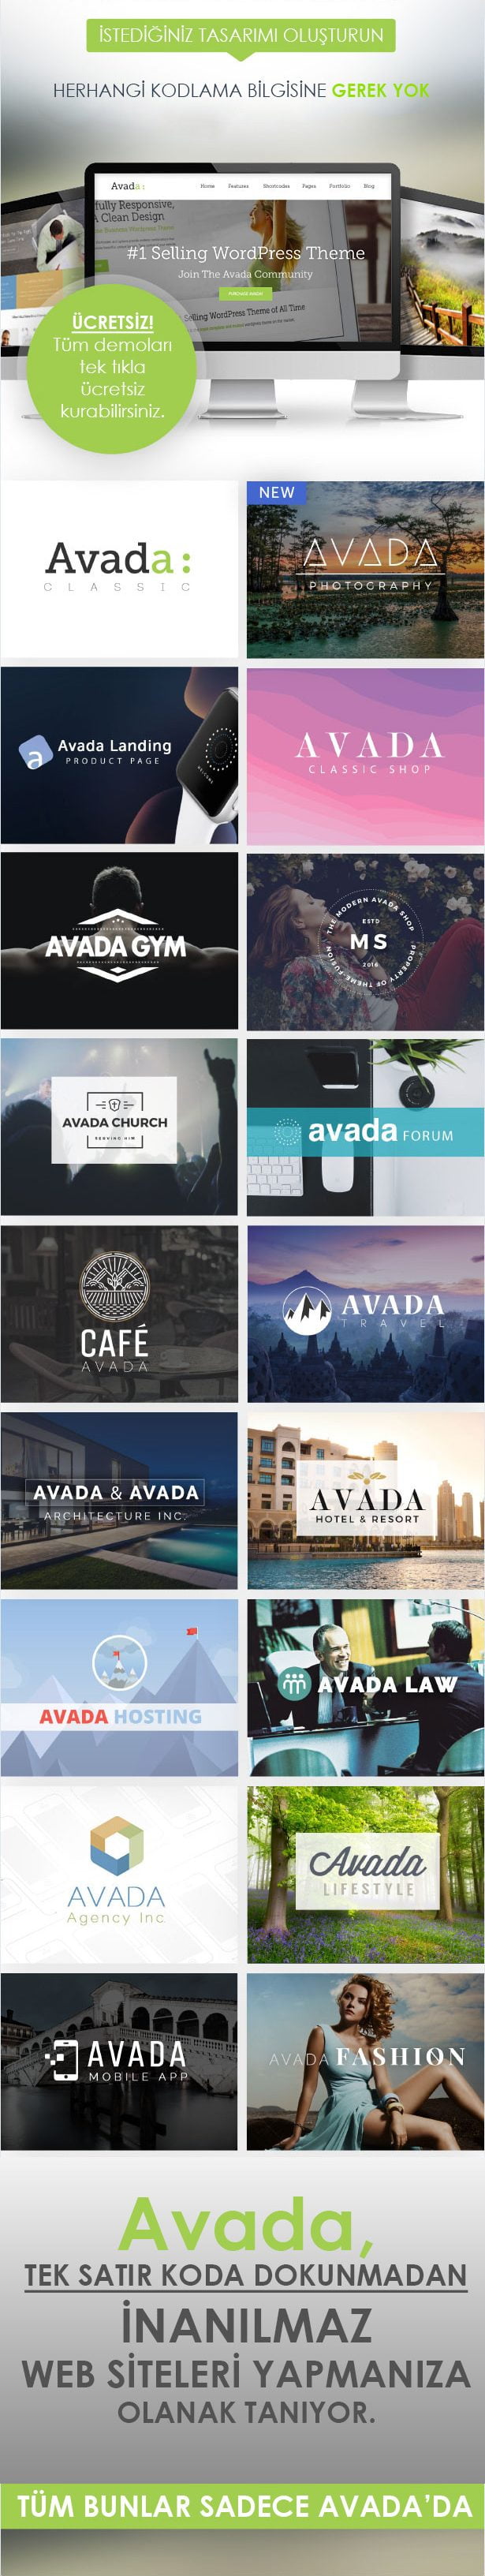 Avada WordPress Teması